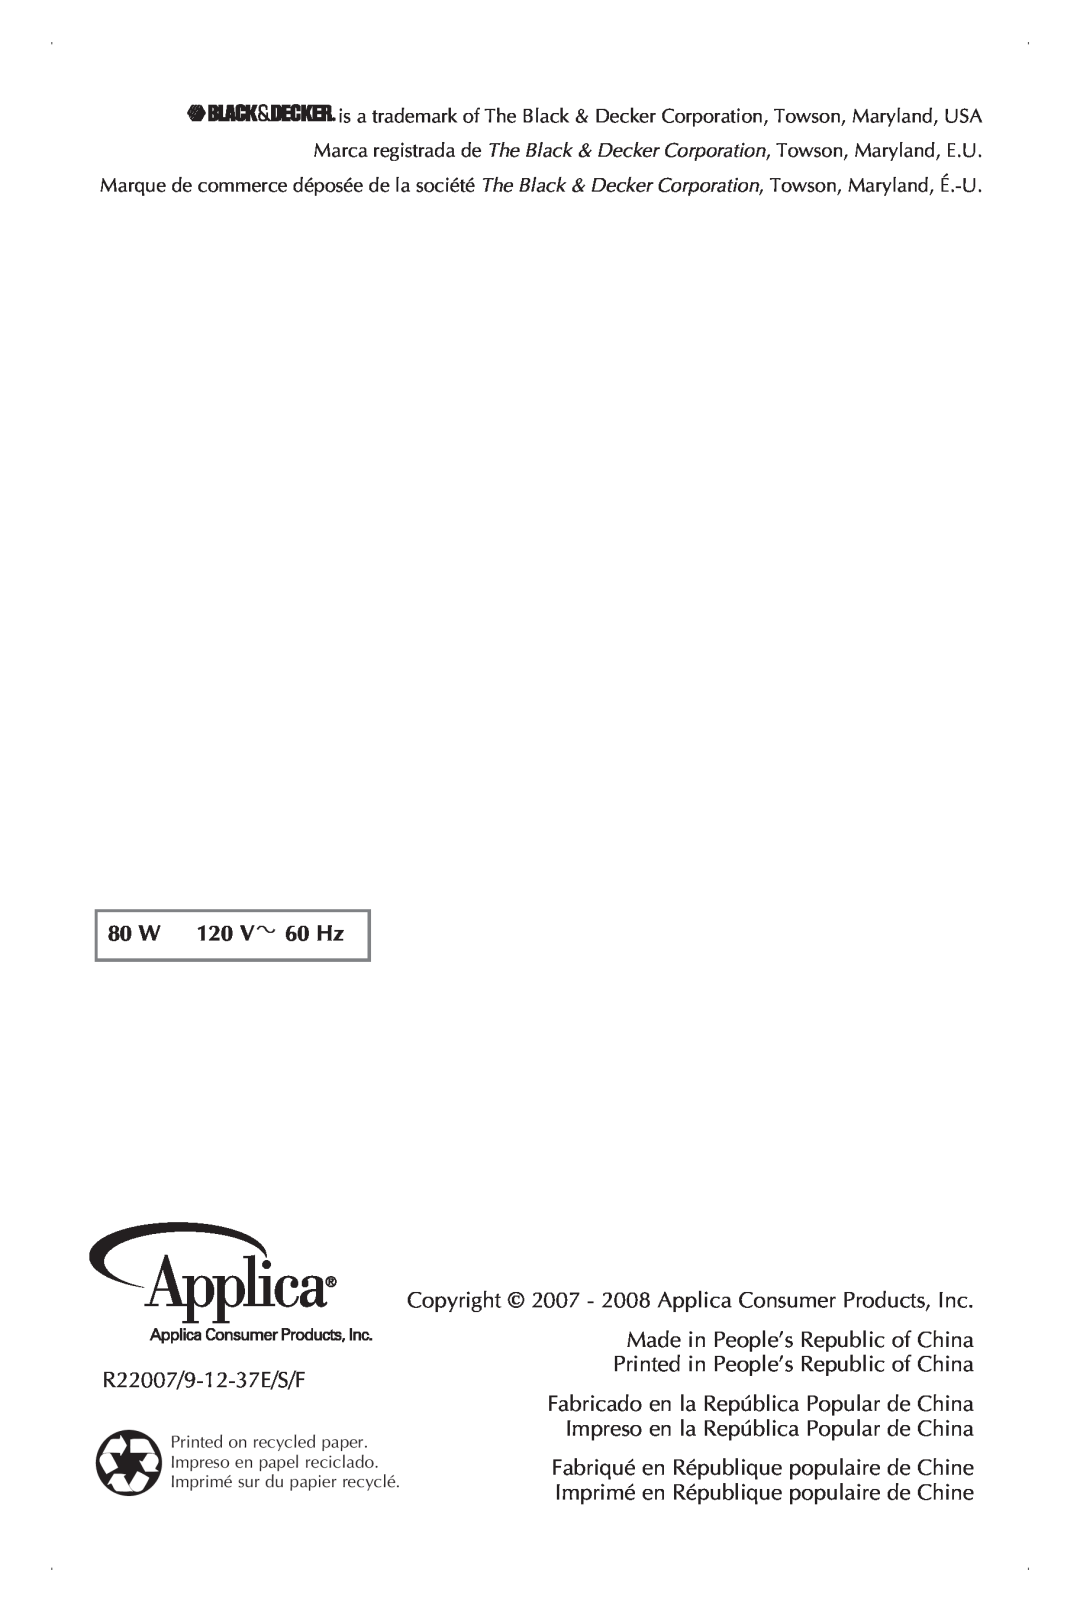 Black & Decker CBM210C manual 80 W 120 V 60 Hz, R22007/9-12-37E/S/F, Copyright 2007 - 2008 Applica Consumer Products, Inc 